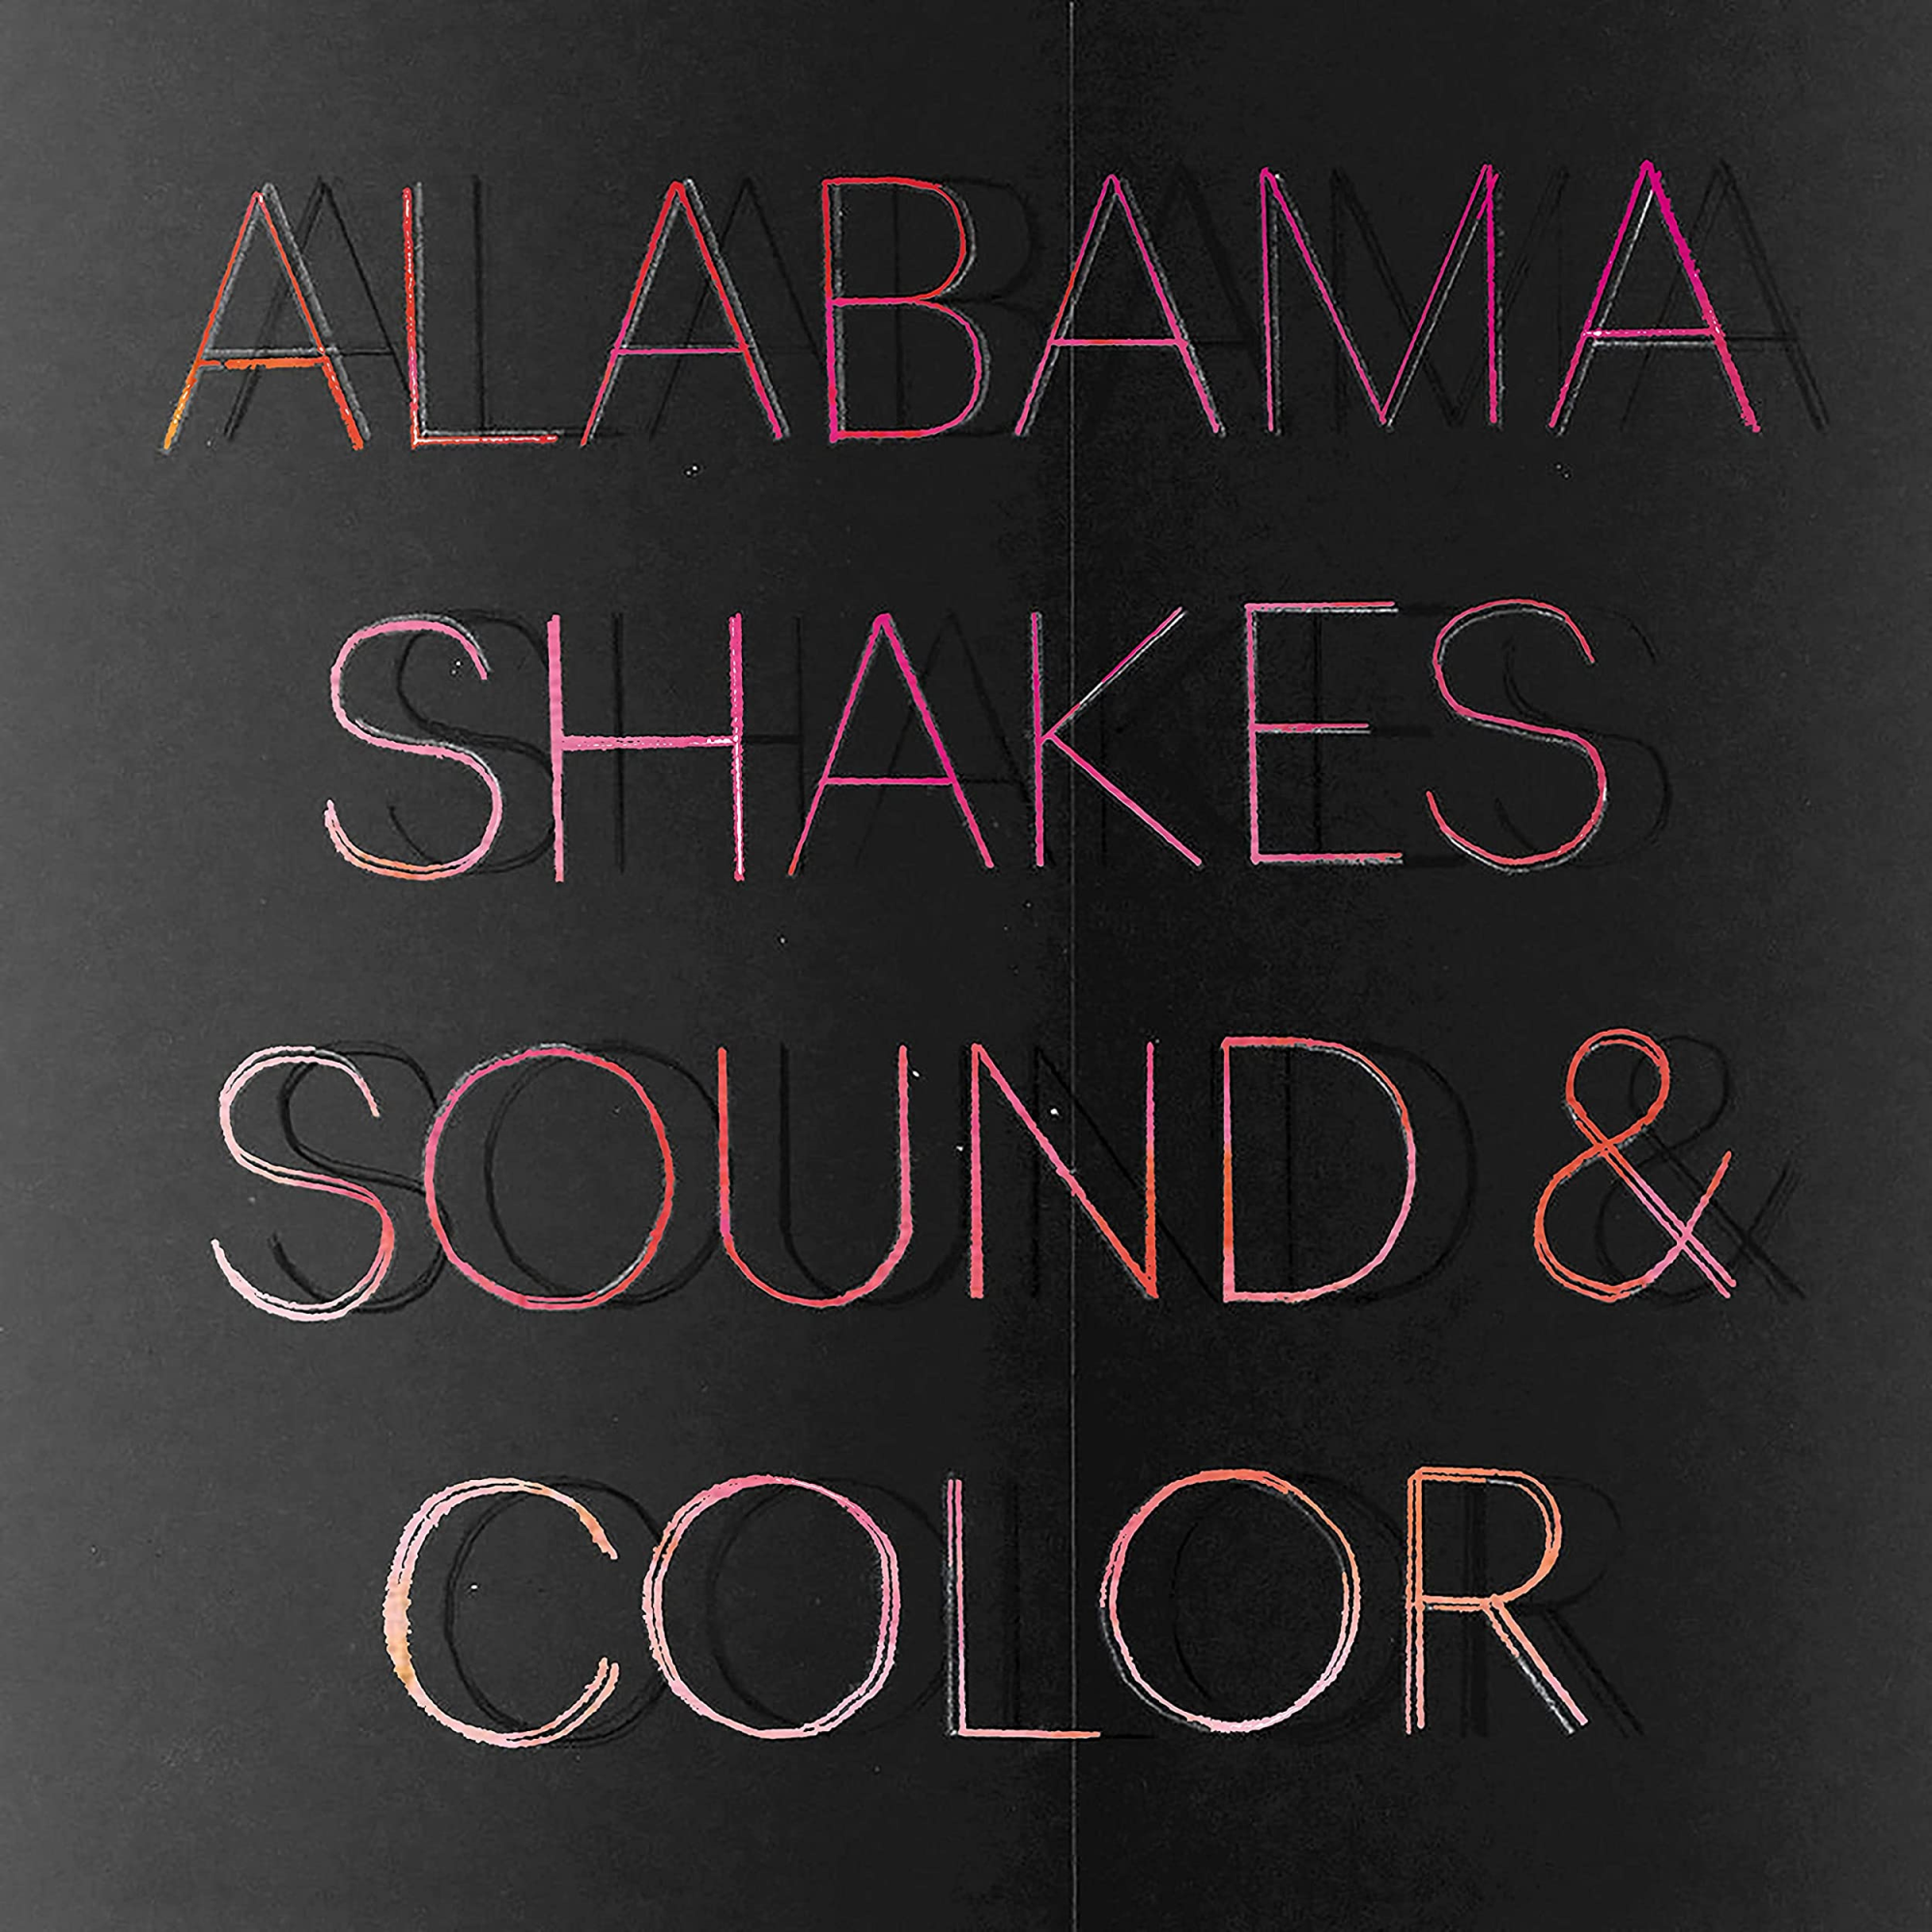 Vinile Alabama Shakes - Sound & Color (2 Lp) NUOVO SIGILLATO, EDIZIONE DEL 29/10/2021 SUBITO DISPONIBILE